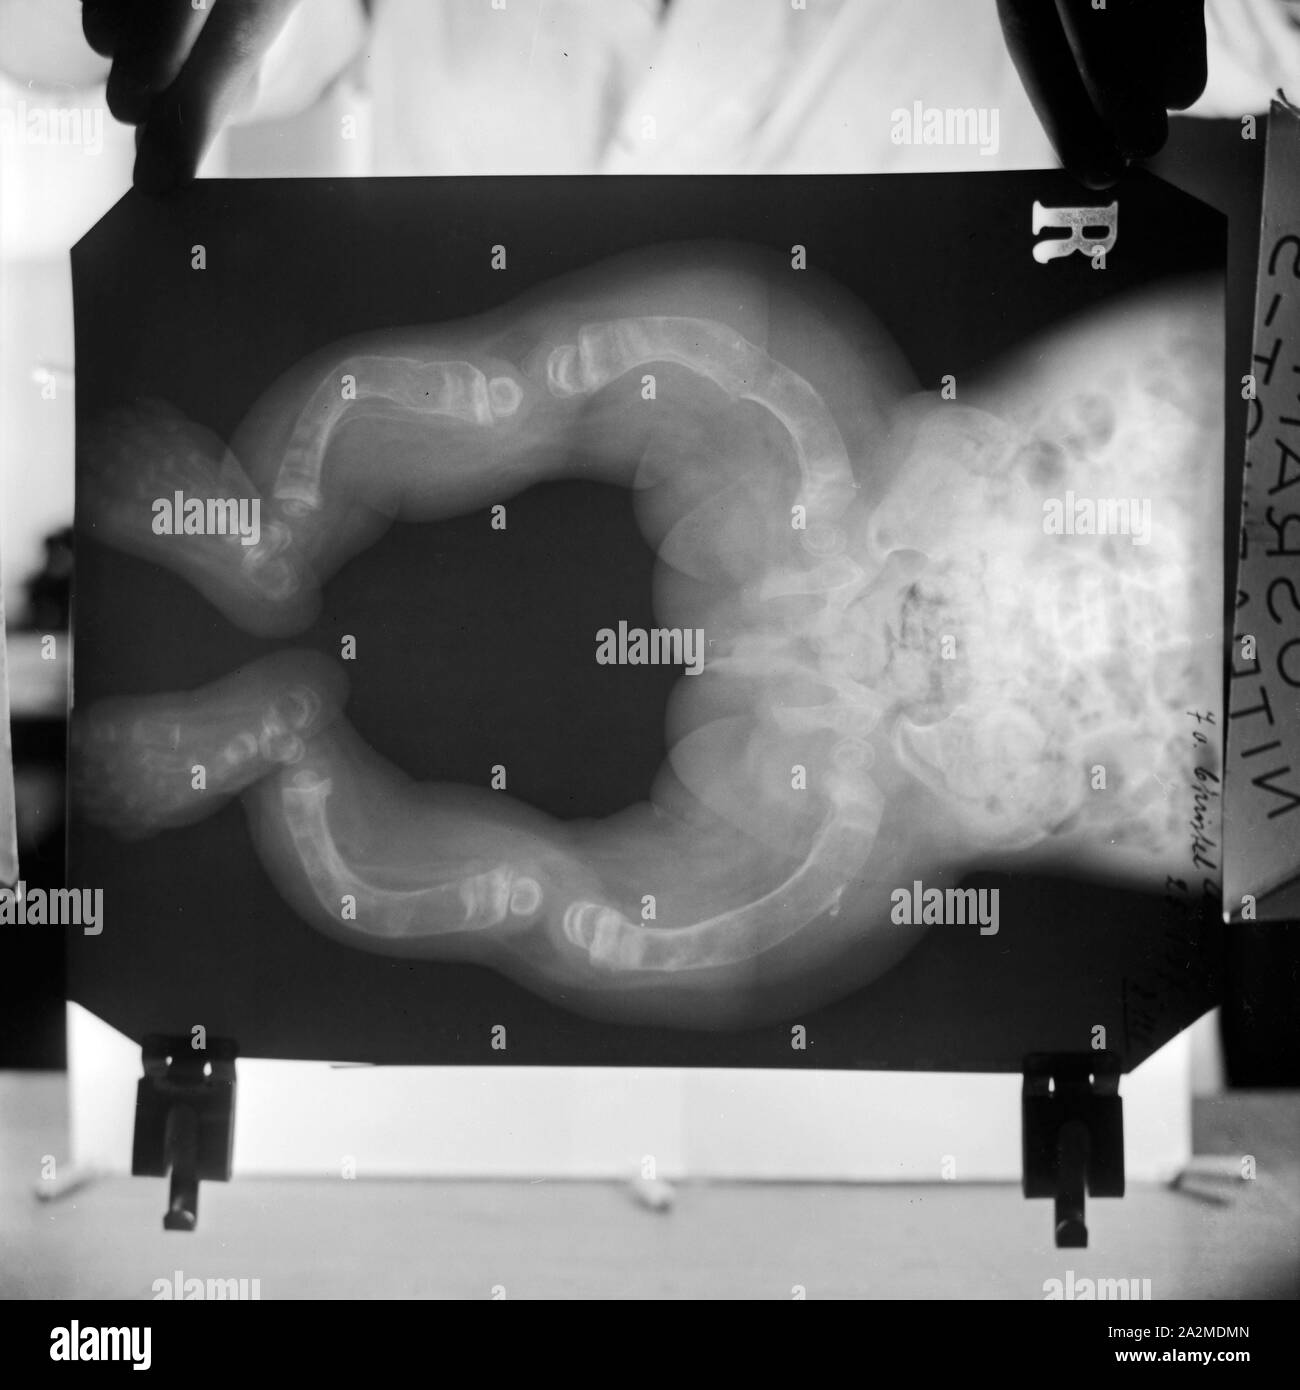 Reproduktion eines Röntgenbilds der deformierten Knochen eines Kleinkinds, Deutschland 1930er Jahre. Riproduzione di una radiografia della gamba deformata le ossa di un bambino, Germania 1930s. Foto Stock